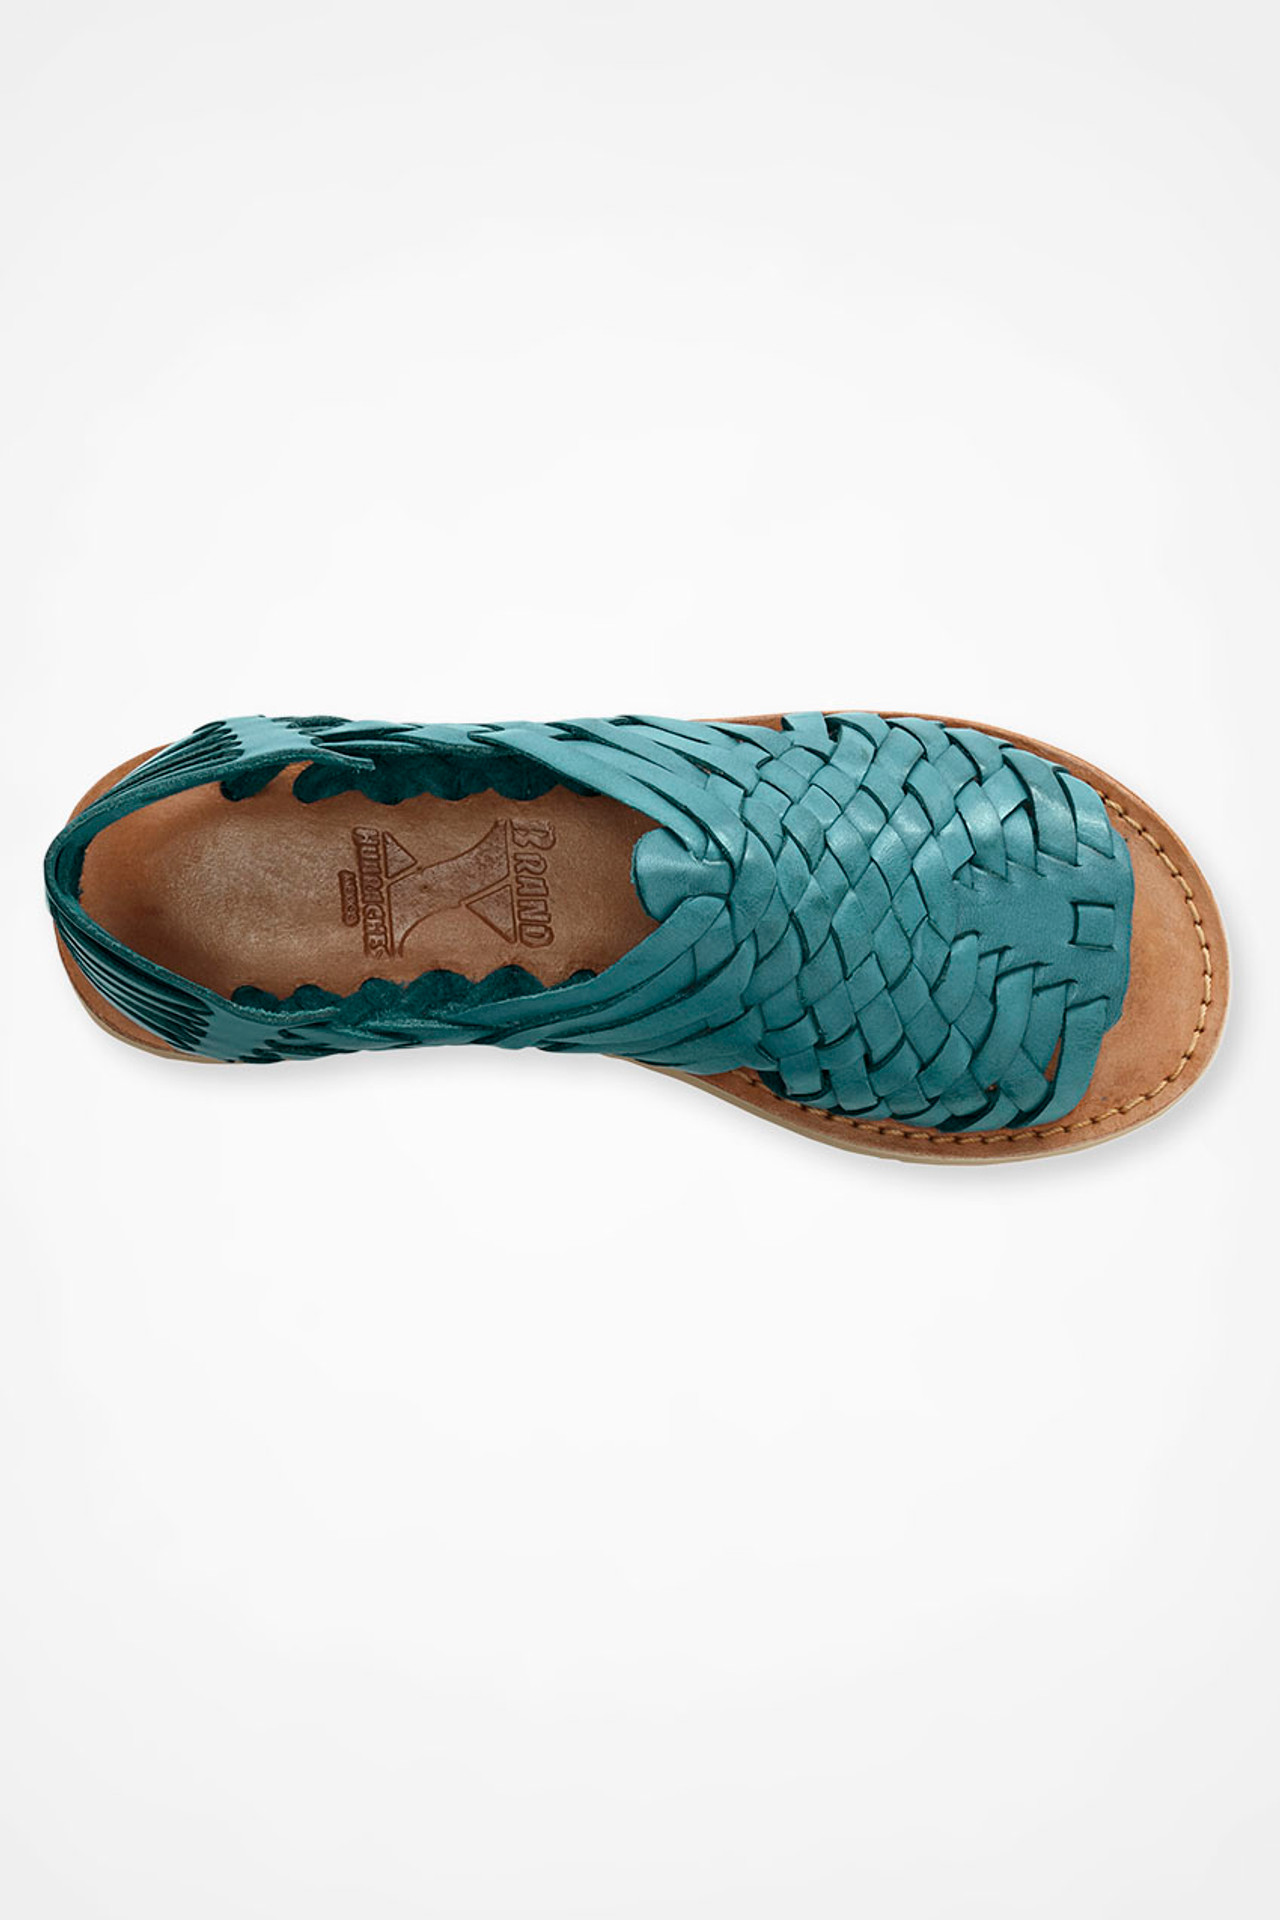 Huarache Sandals by Brand X Huaraches®